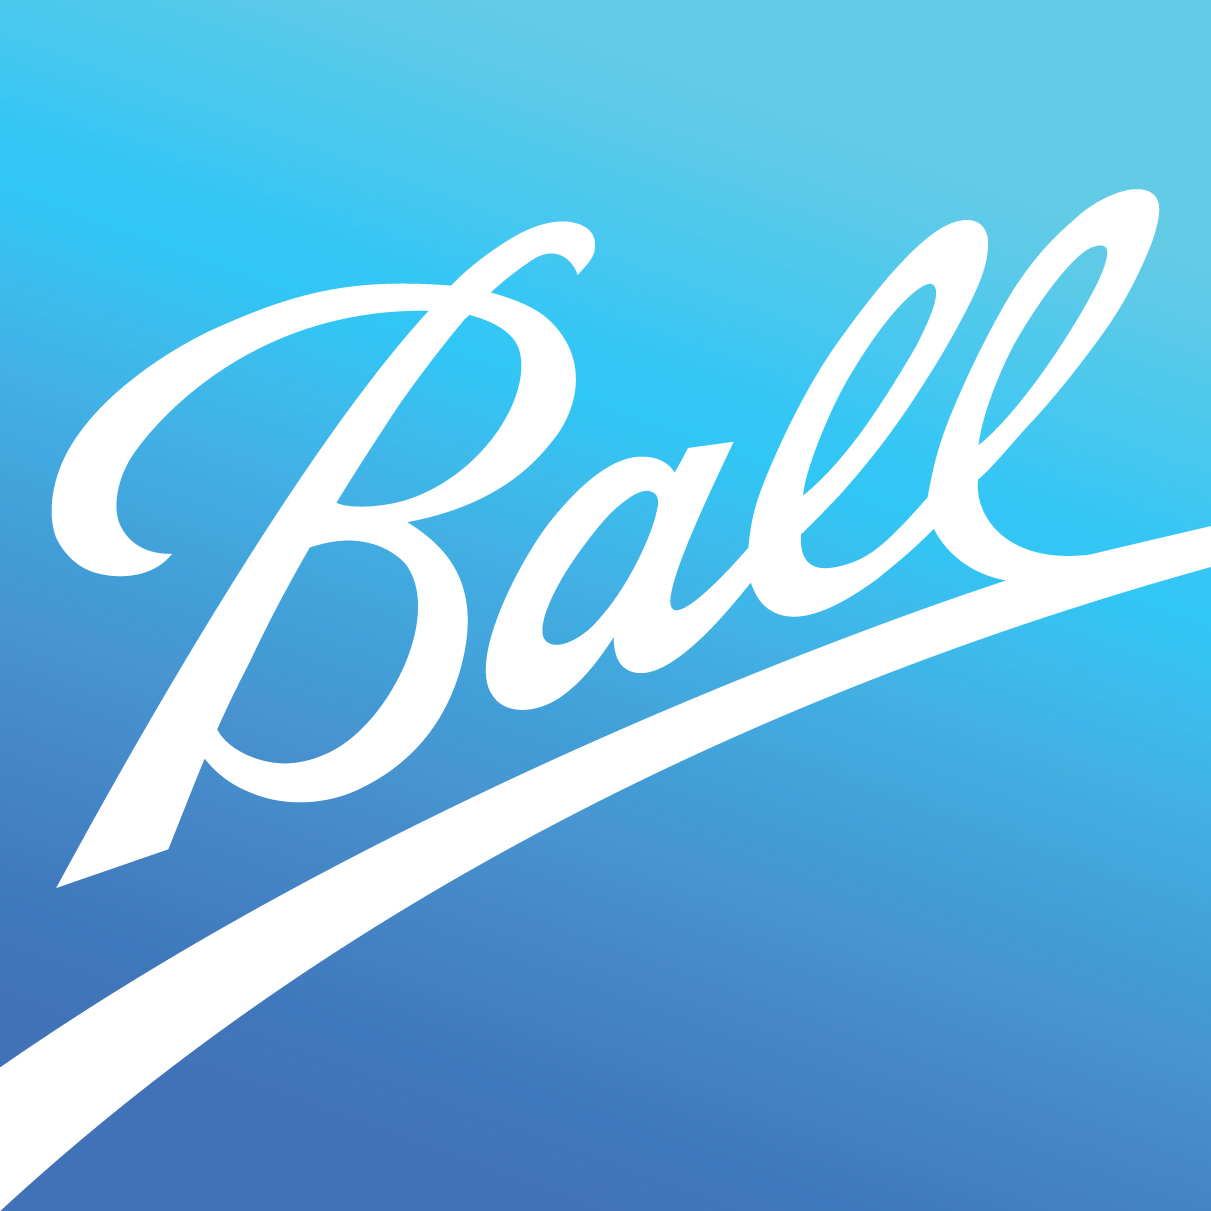 Logo Ball